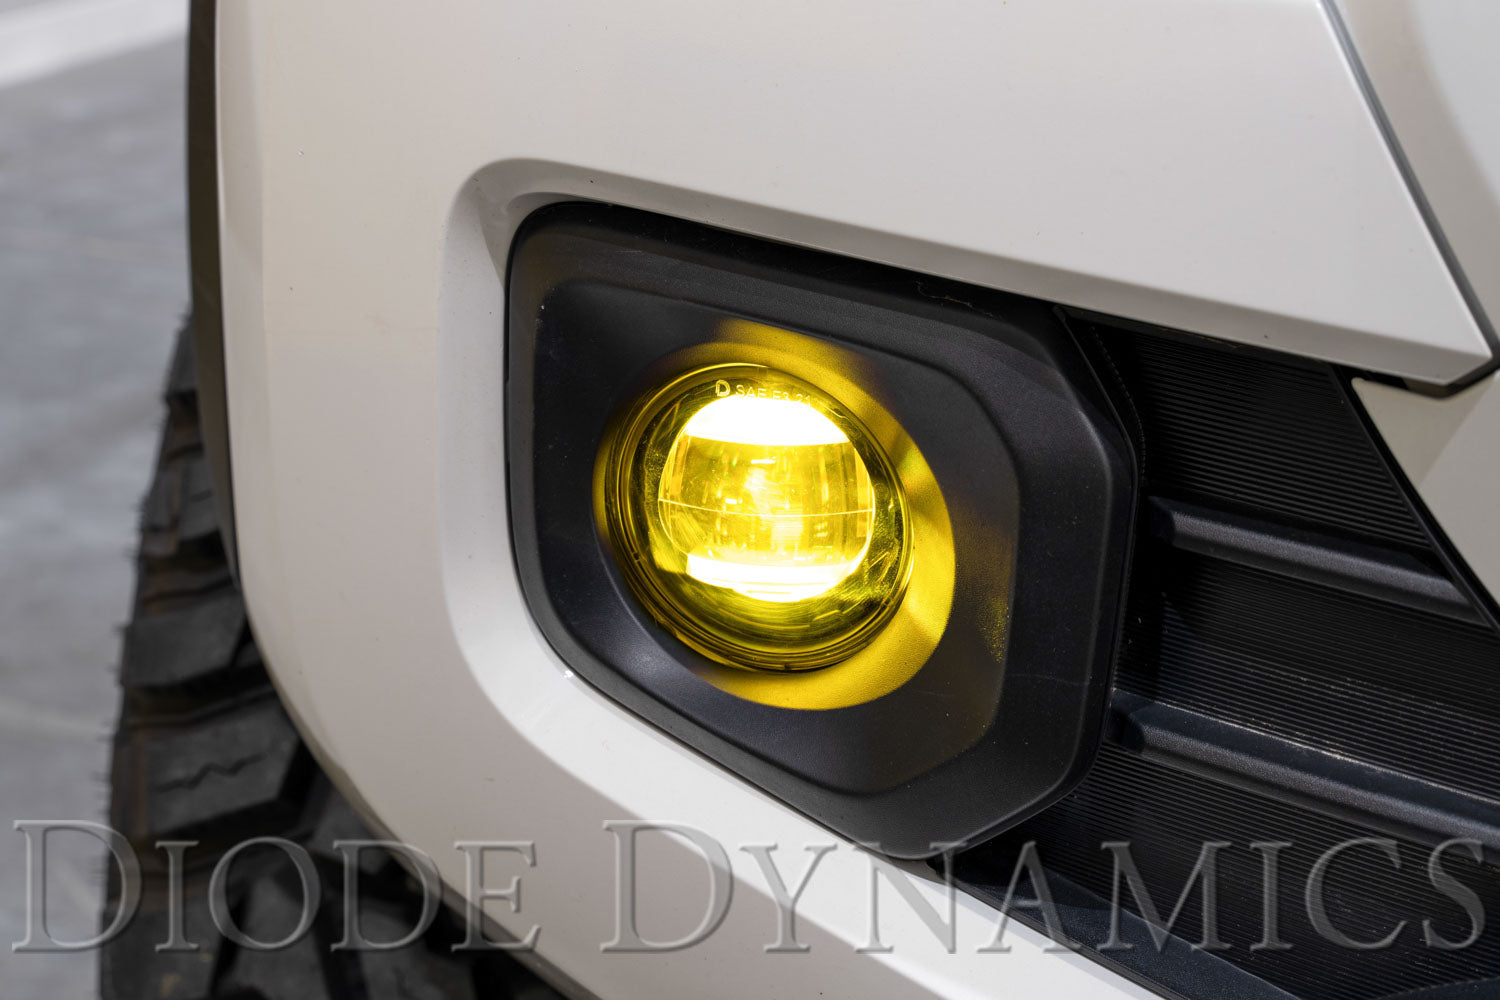 Elite Series Fog Lamps for 2014-2017 Lexus CT200h (pair)-